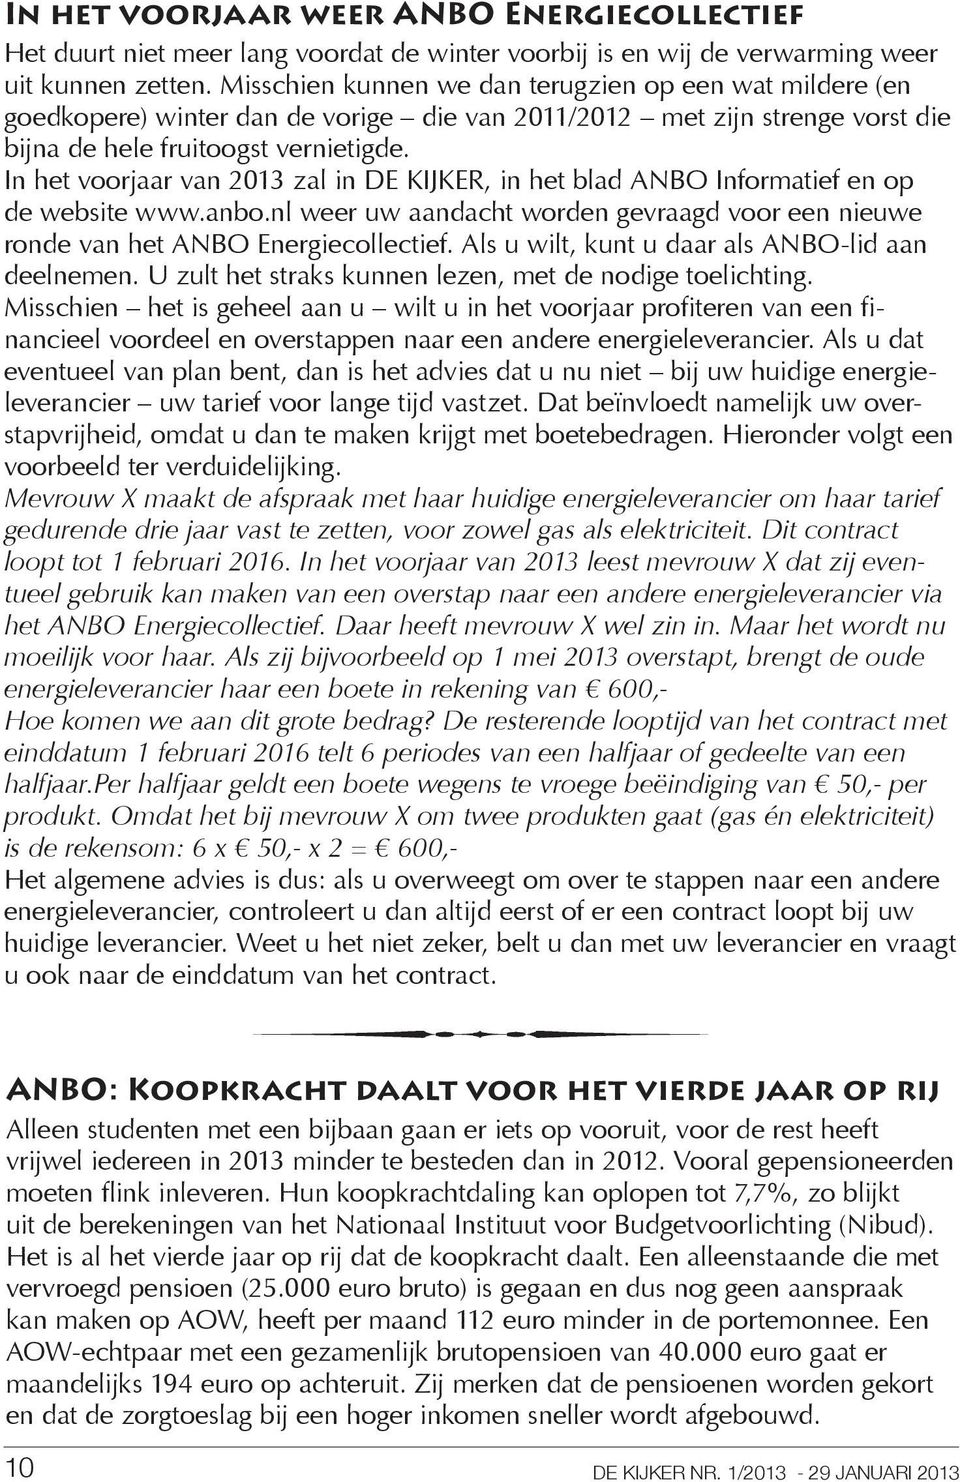 In het voorjaar van 2013 zal in DE KIJKER, in het blad ANBO Informatief en op de website www.anbo.nl weer uw aandacht worden gevraagd voor een nieuwe ronde van het ANBO Energiecollectief.